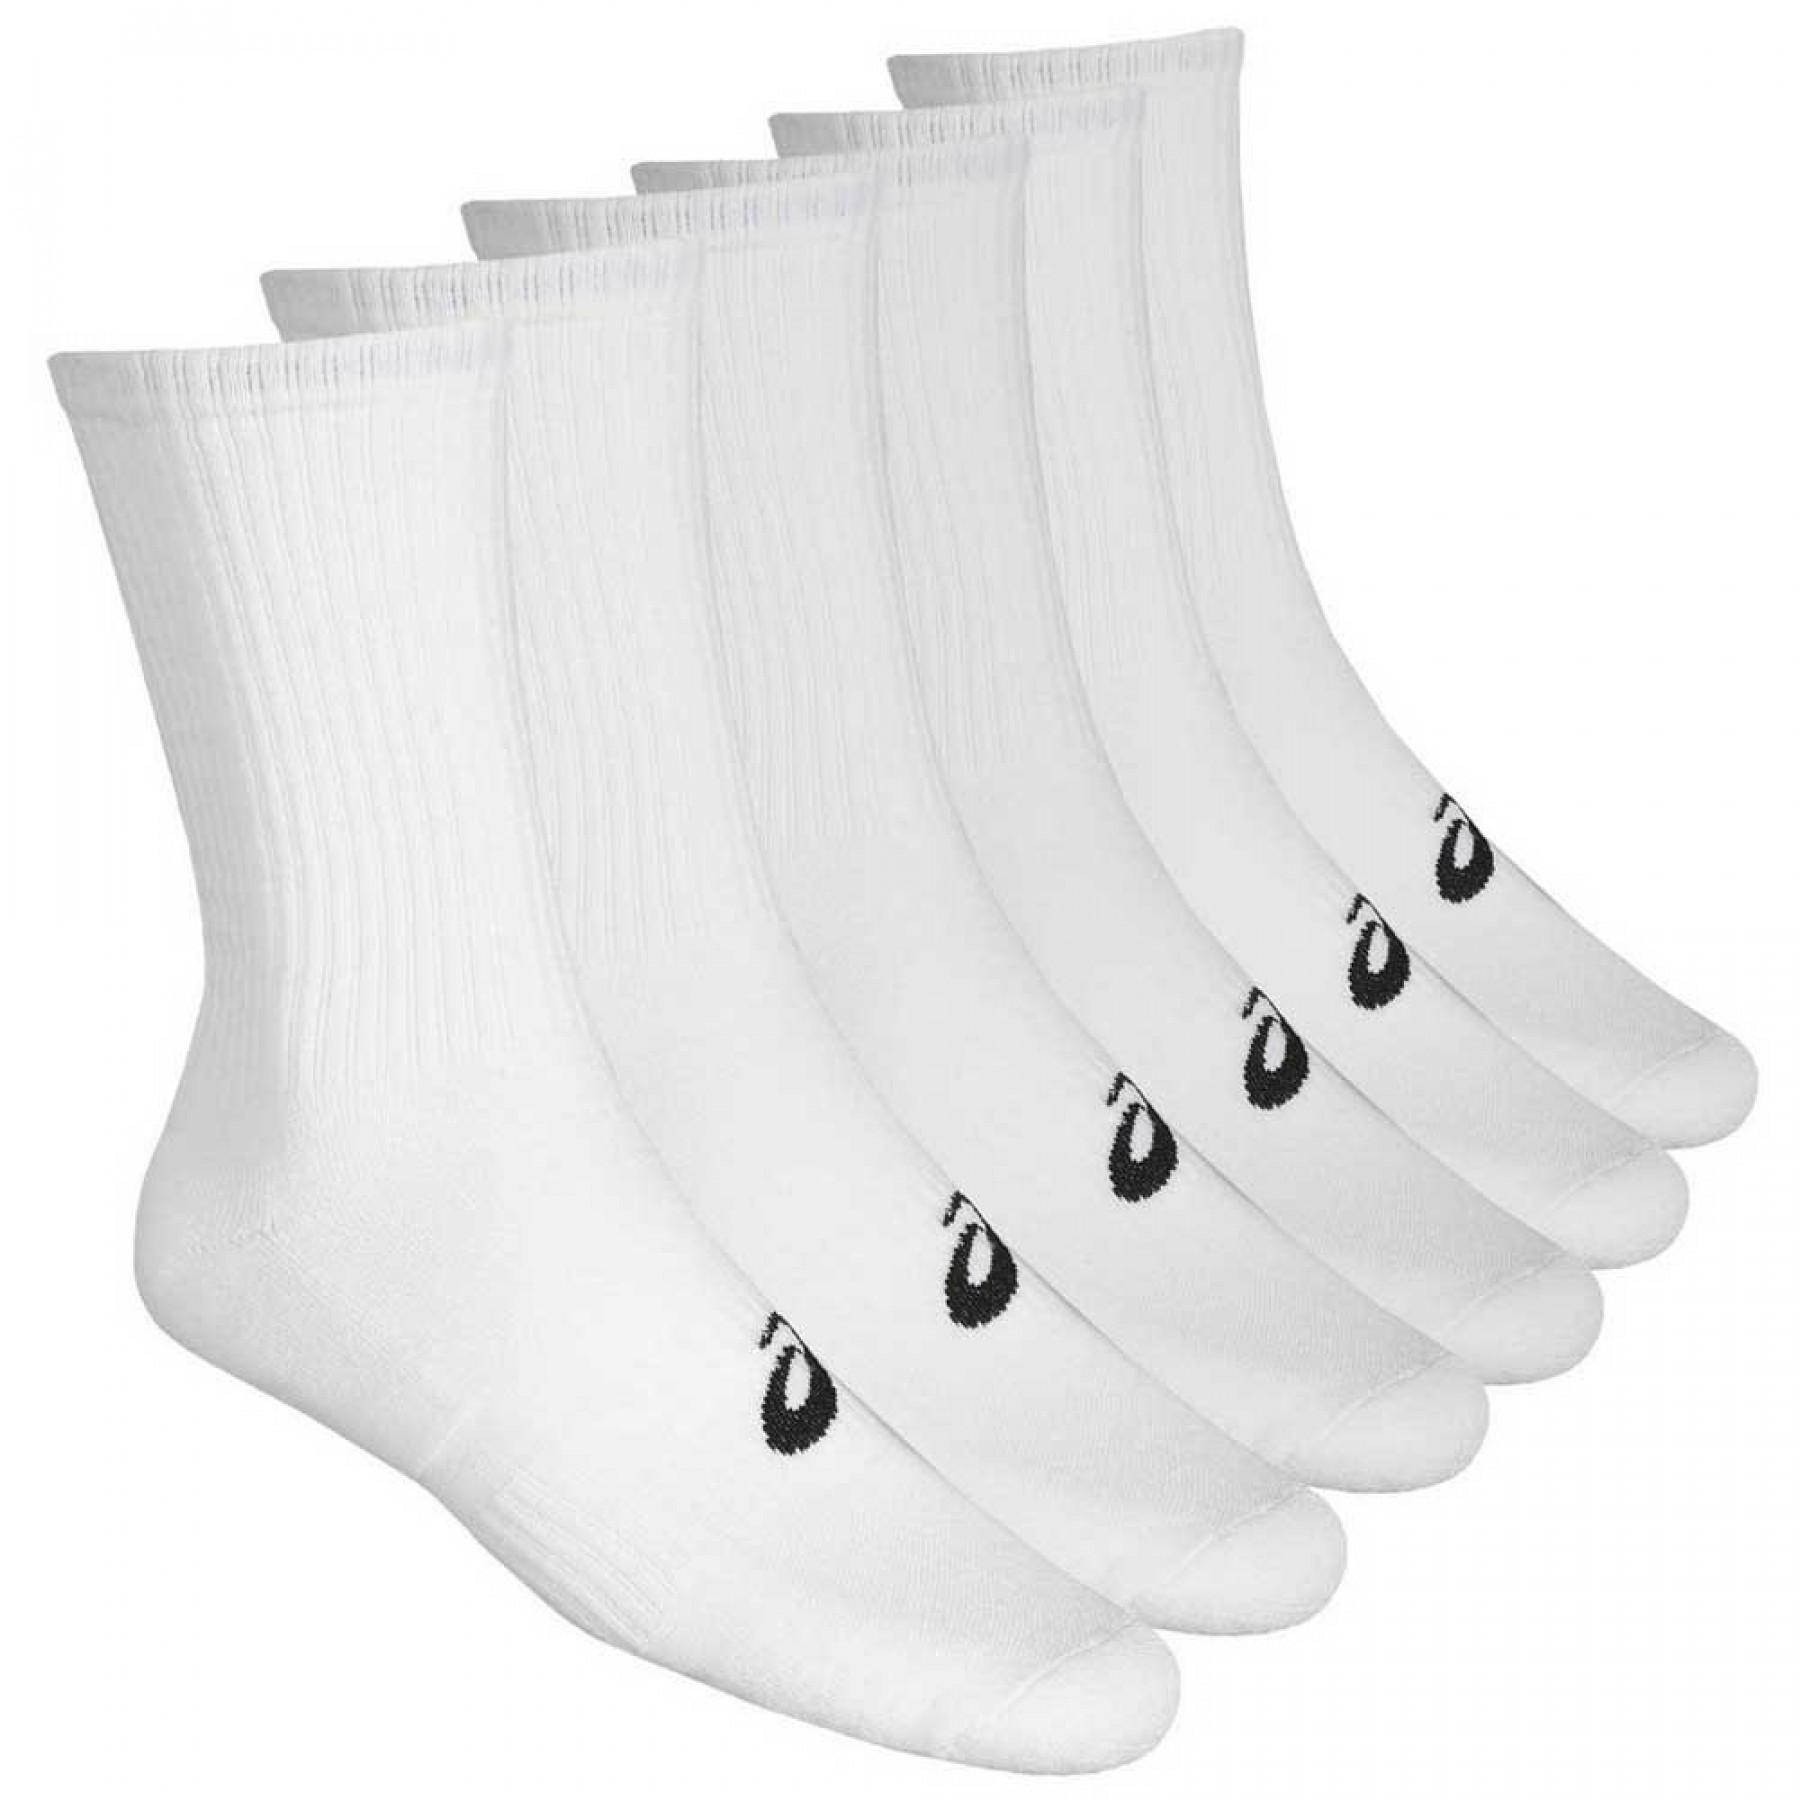 Socks Asics (x6) - Socks - Women's volleyball wear - Volleyball wear